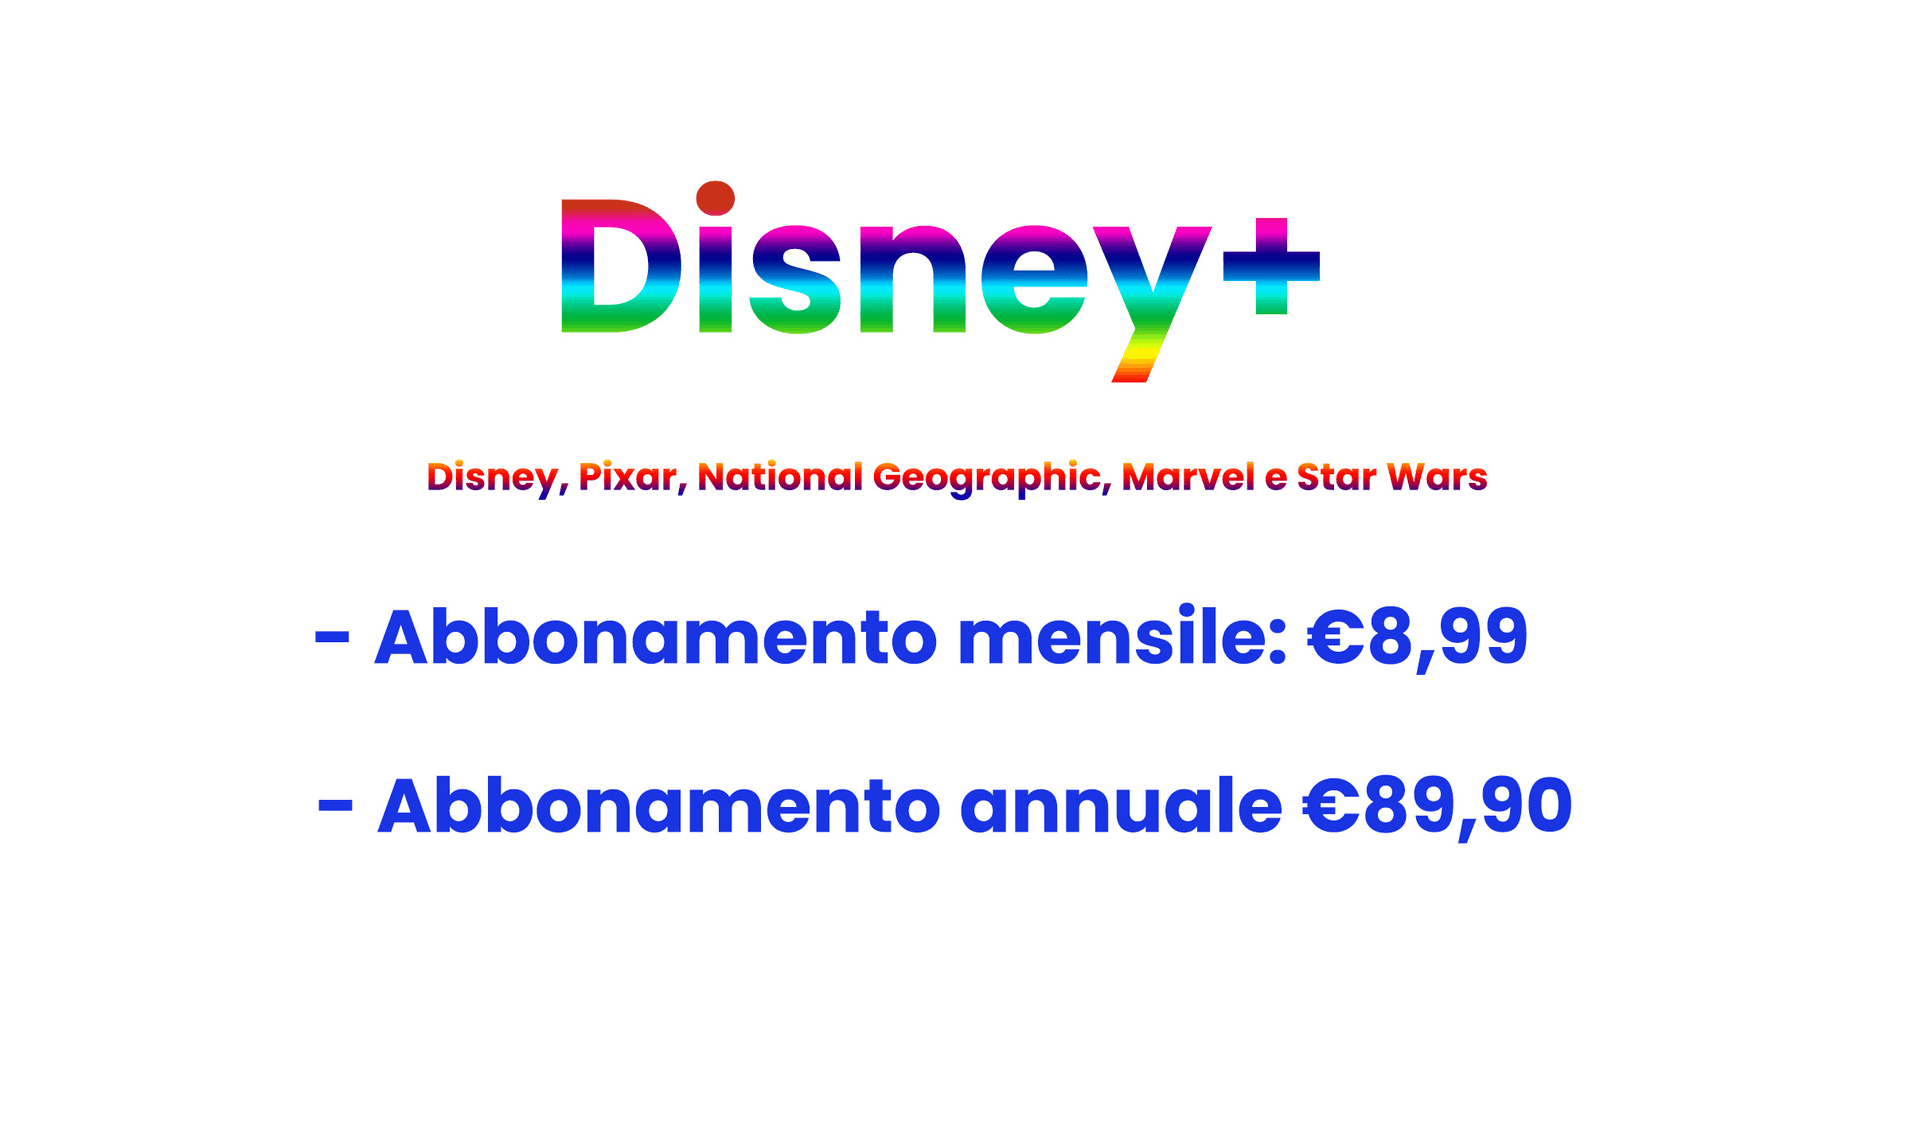 Disney+ piano e prezzi in Italia